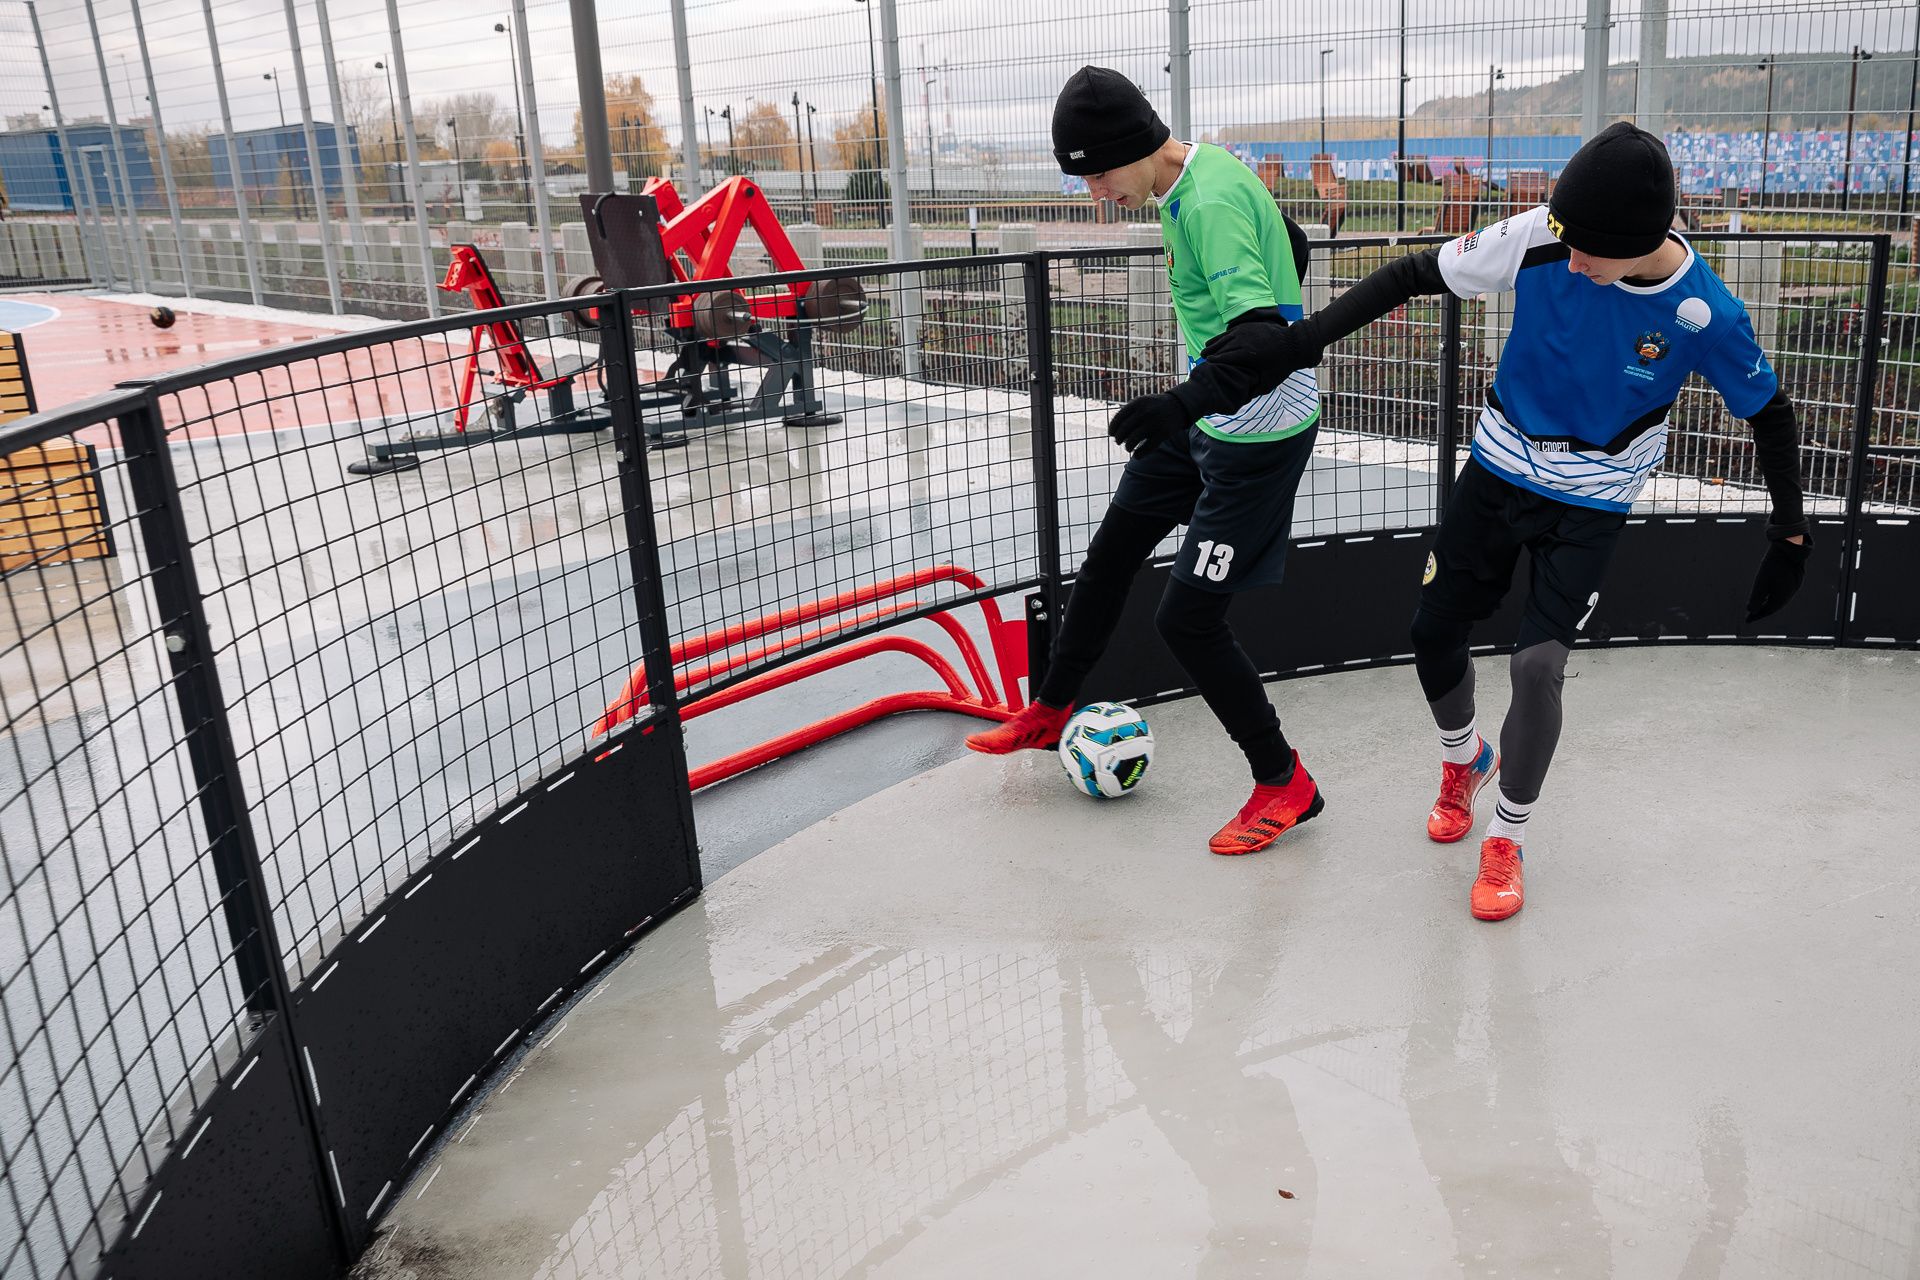 На спортивных площадках можно заниматься мини-футболом, баскетболом, панна-футболом, воркаутом